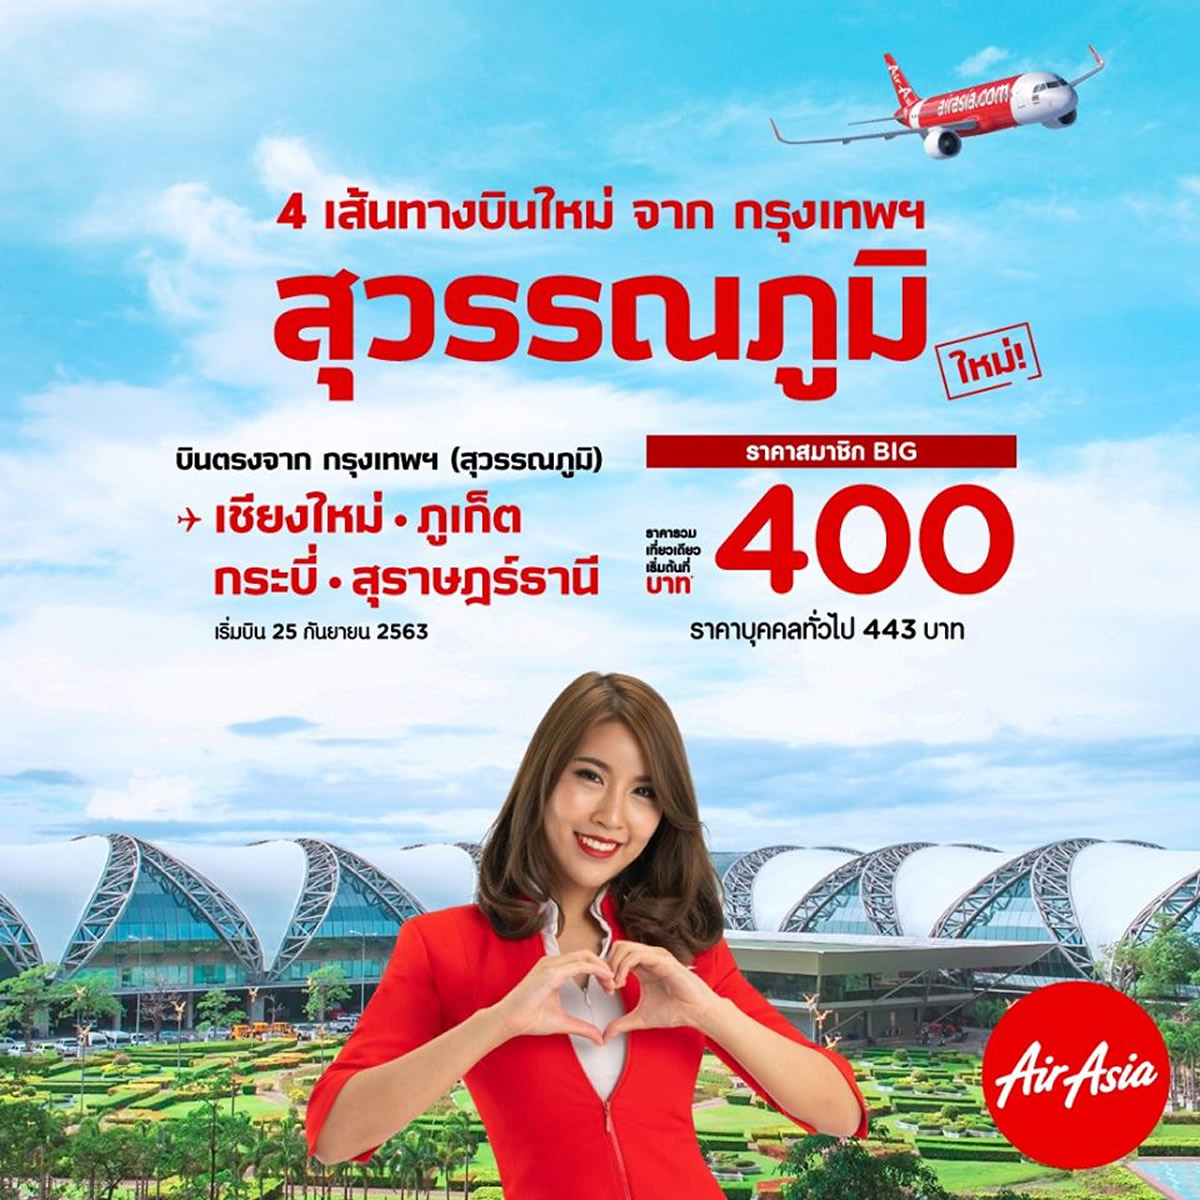 タイ エアアジア スワンナプーム空港発着便の予約開始 タイランドハイパーリンクス Thai Hyper